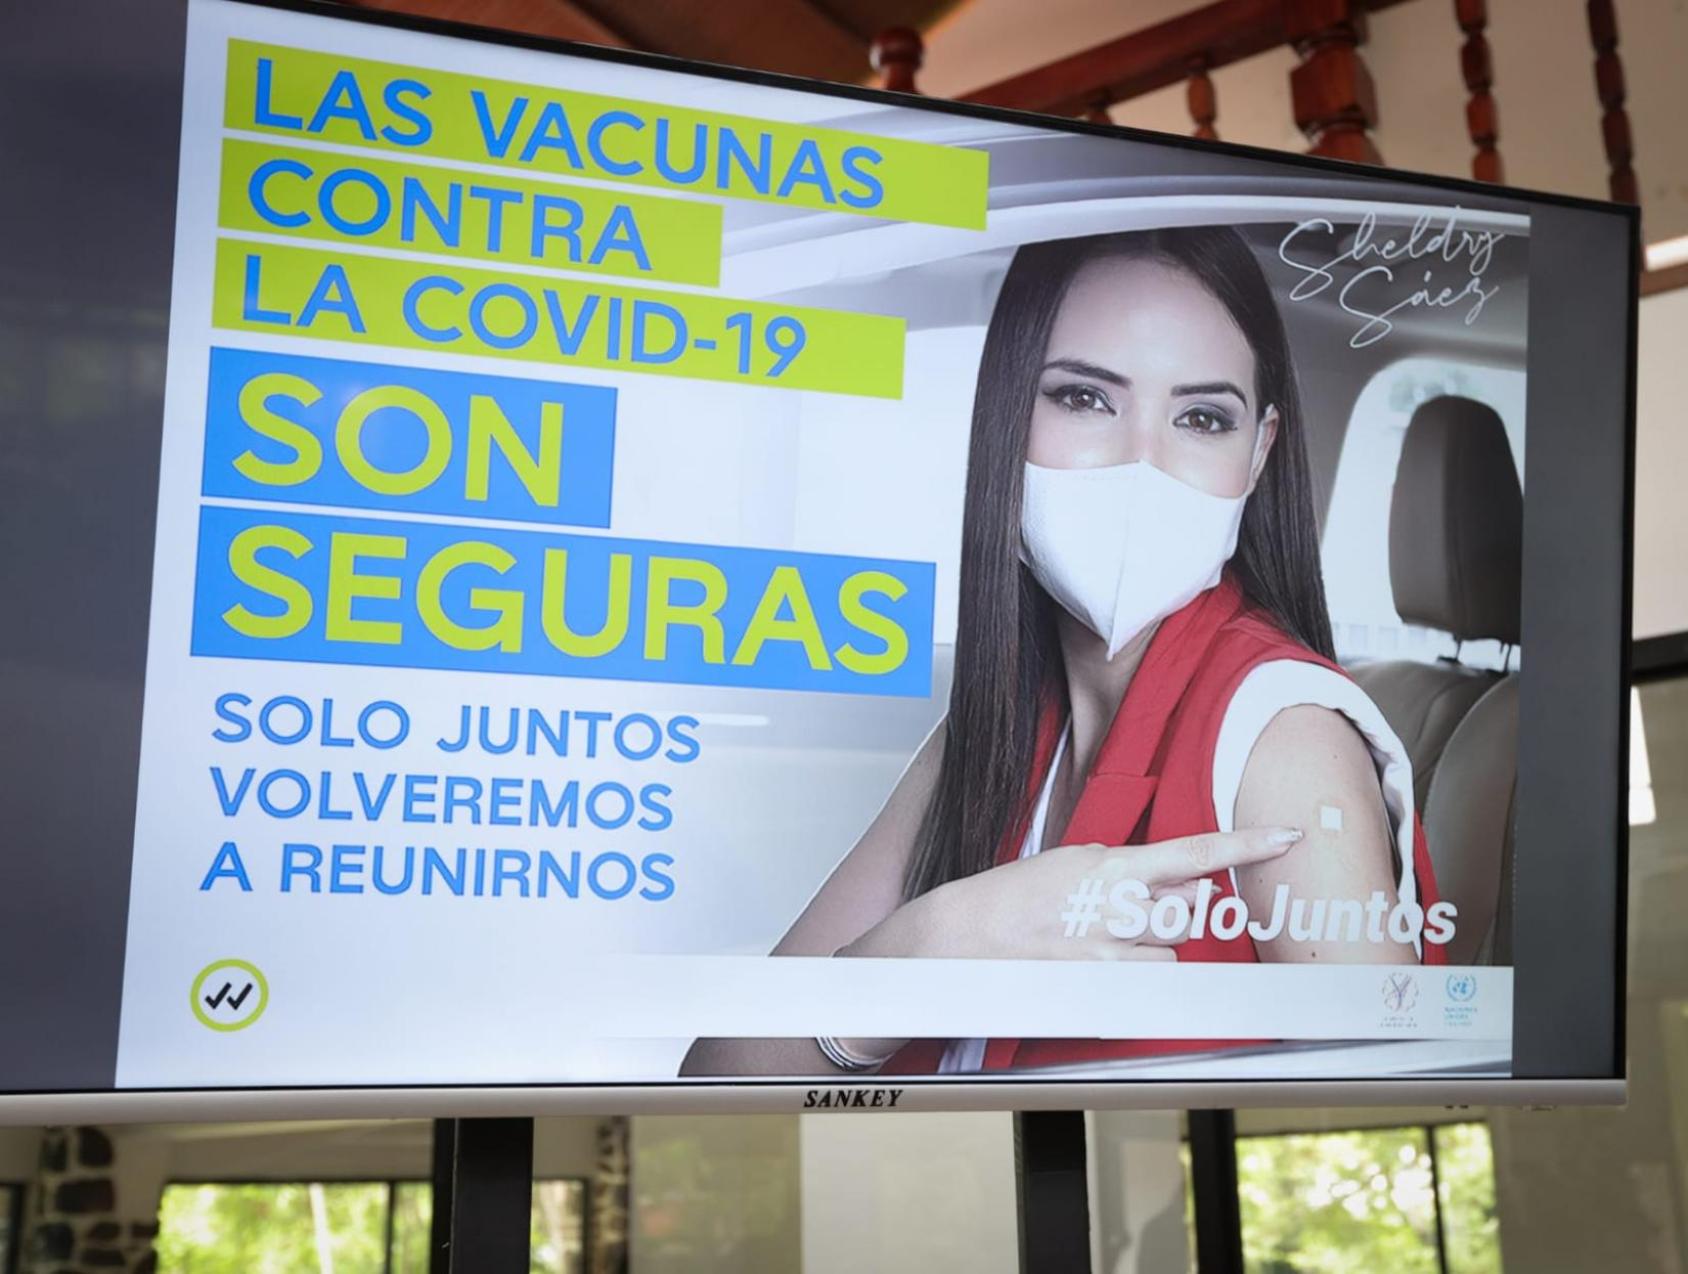 لافتة عليها صورة امرأة ترتدي كمامة وتشير إلى ضمادة على ذراعها بالقرب من عبارة "اللقاحات ضد كوفيد-19 آمنة" باللغة الإسبانية.